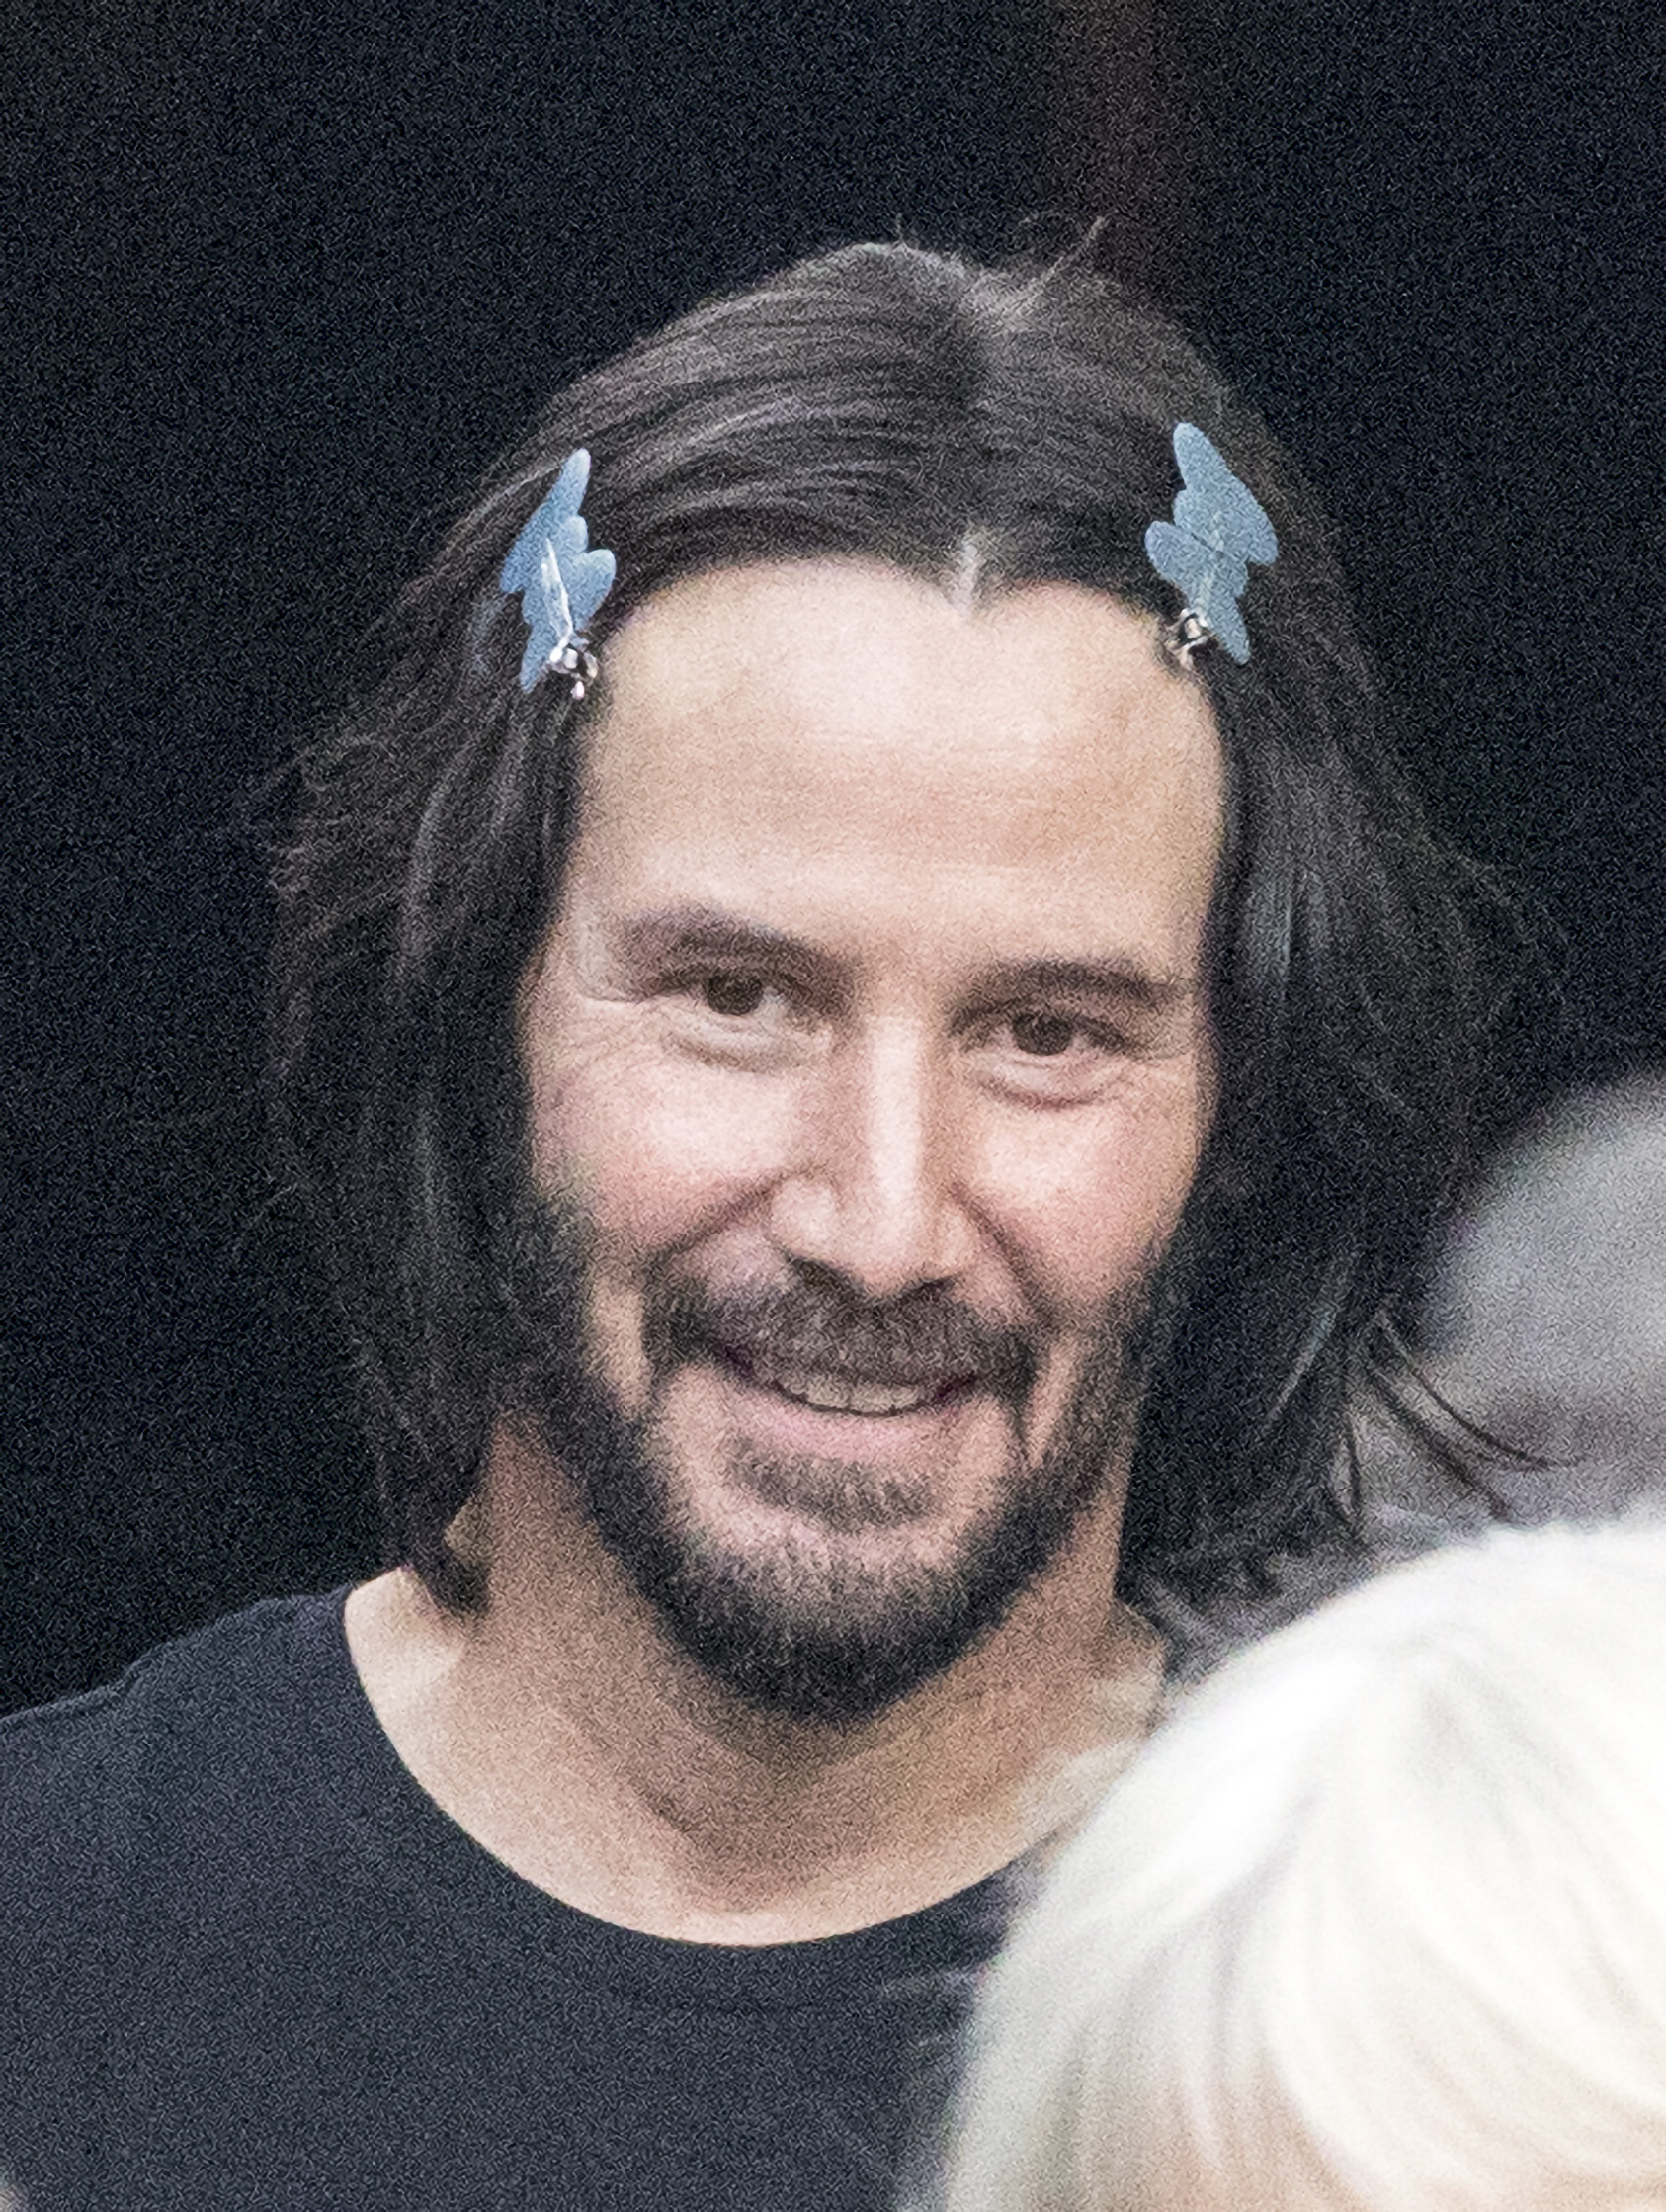 En acción. Keanu Reeves fue visto en el set de filmación de "John Wick" en Alemania. Lucía el pelo largo por sus hombros y lo llevaba recogido con dos hebillas